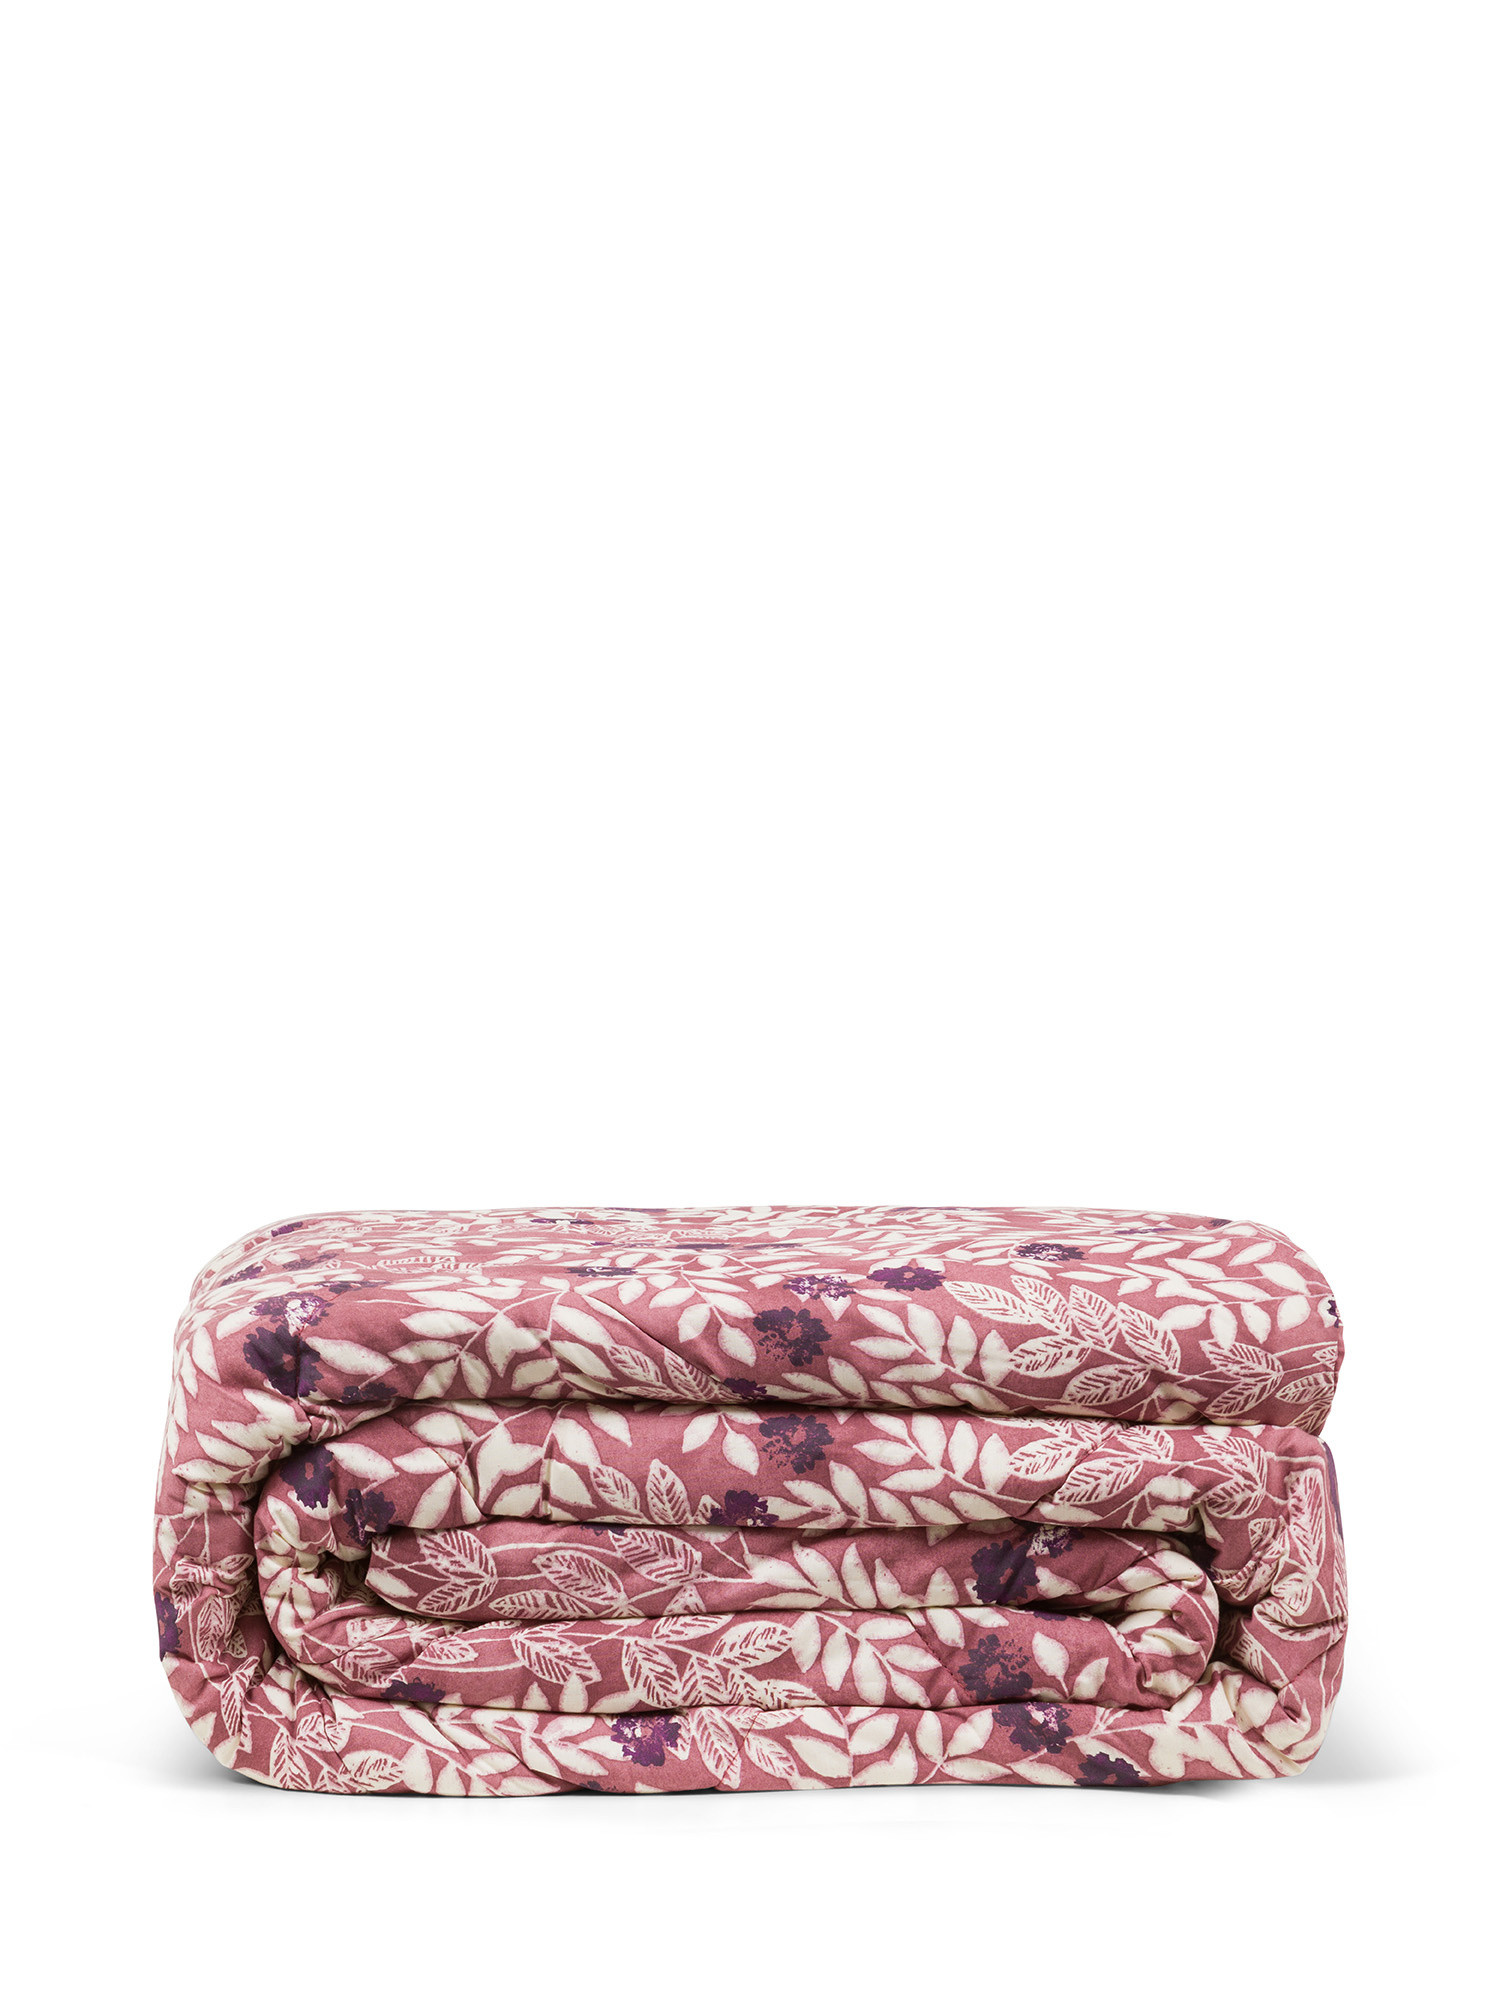 цифровой складной инфракрасное одеяло для похудения тела вес потери body shaper носимых вес одеяло детокс терапия машина Хлопковое одеяло с цветочным узором Coincasa, розовый